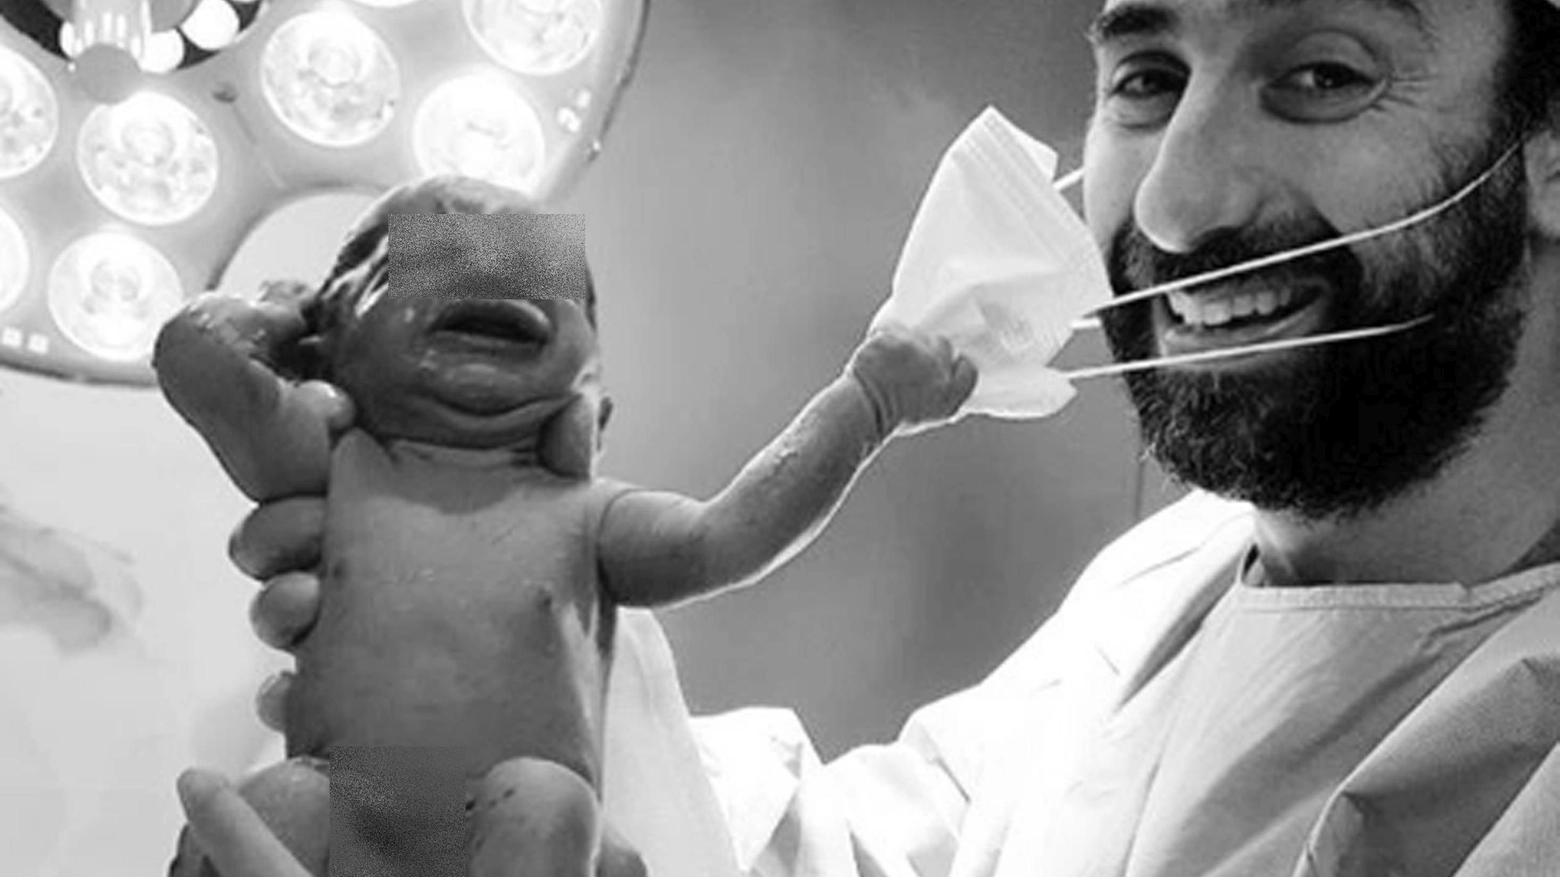 Il neonato strappa la mascherina dal volto del ginecologo: lo scatto di speranza (Ansa)